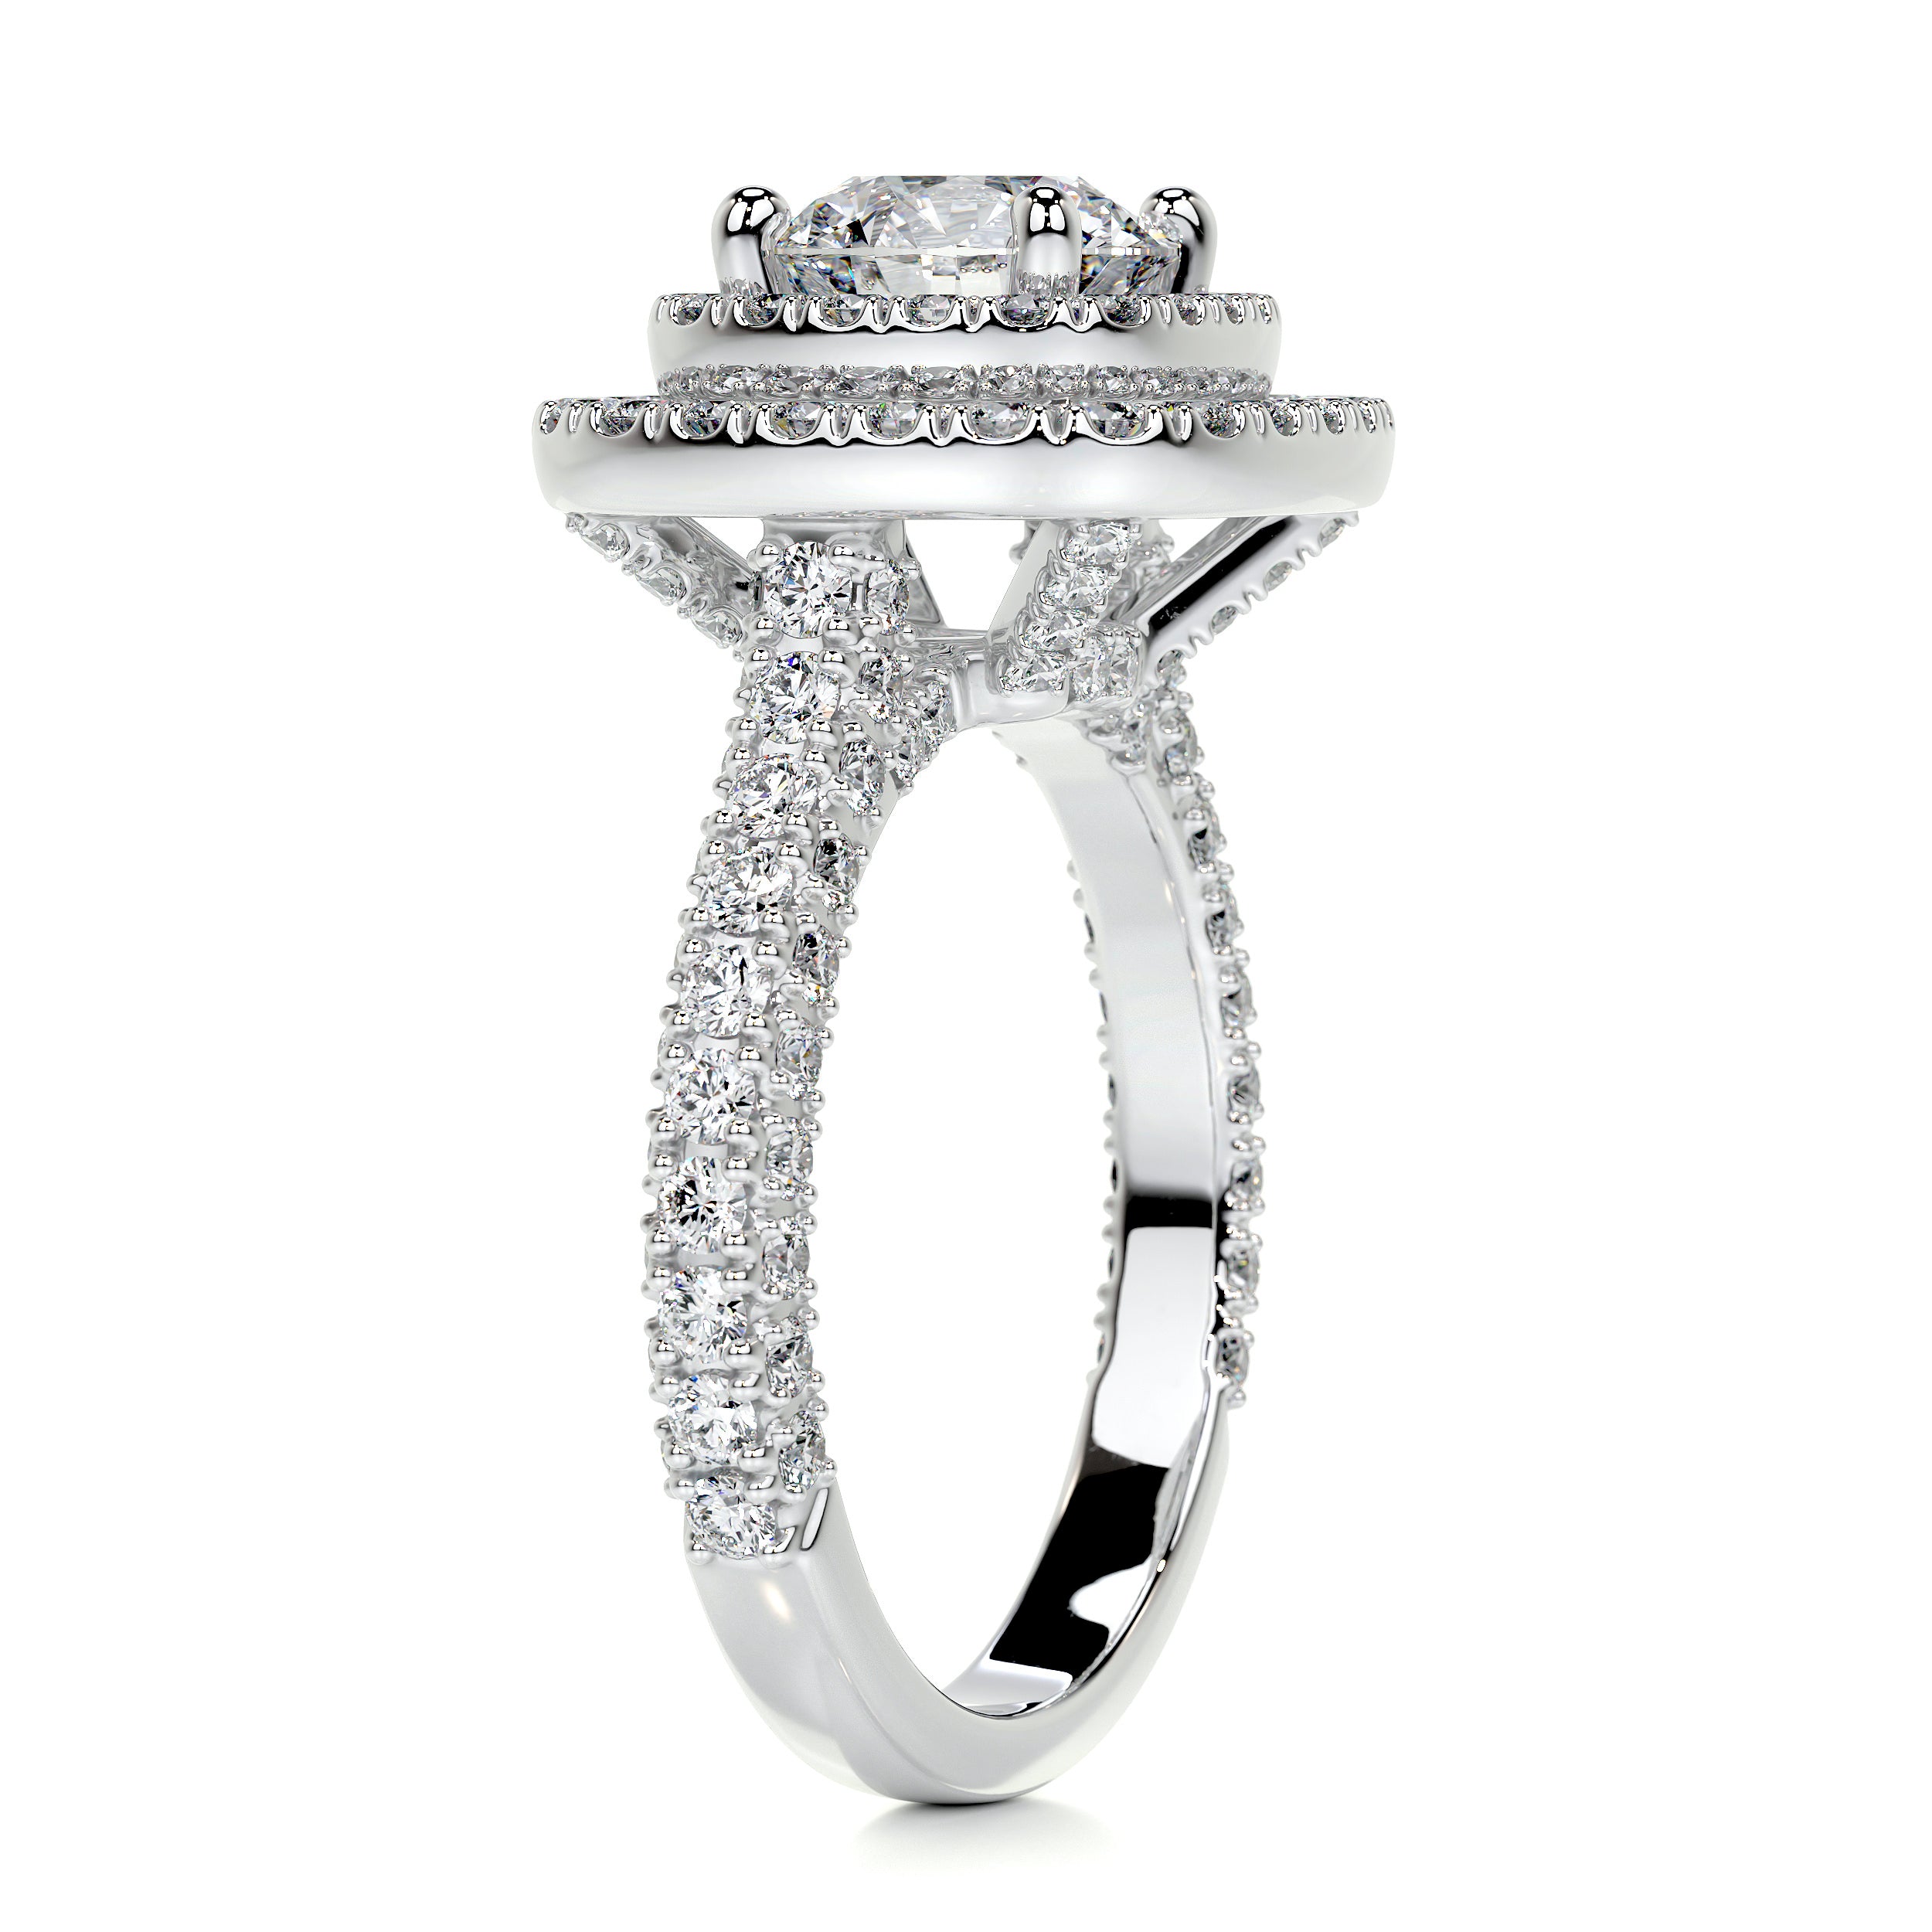 Carmen Diamond Engagement Ring   (2.25 Carat) -Platinum